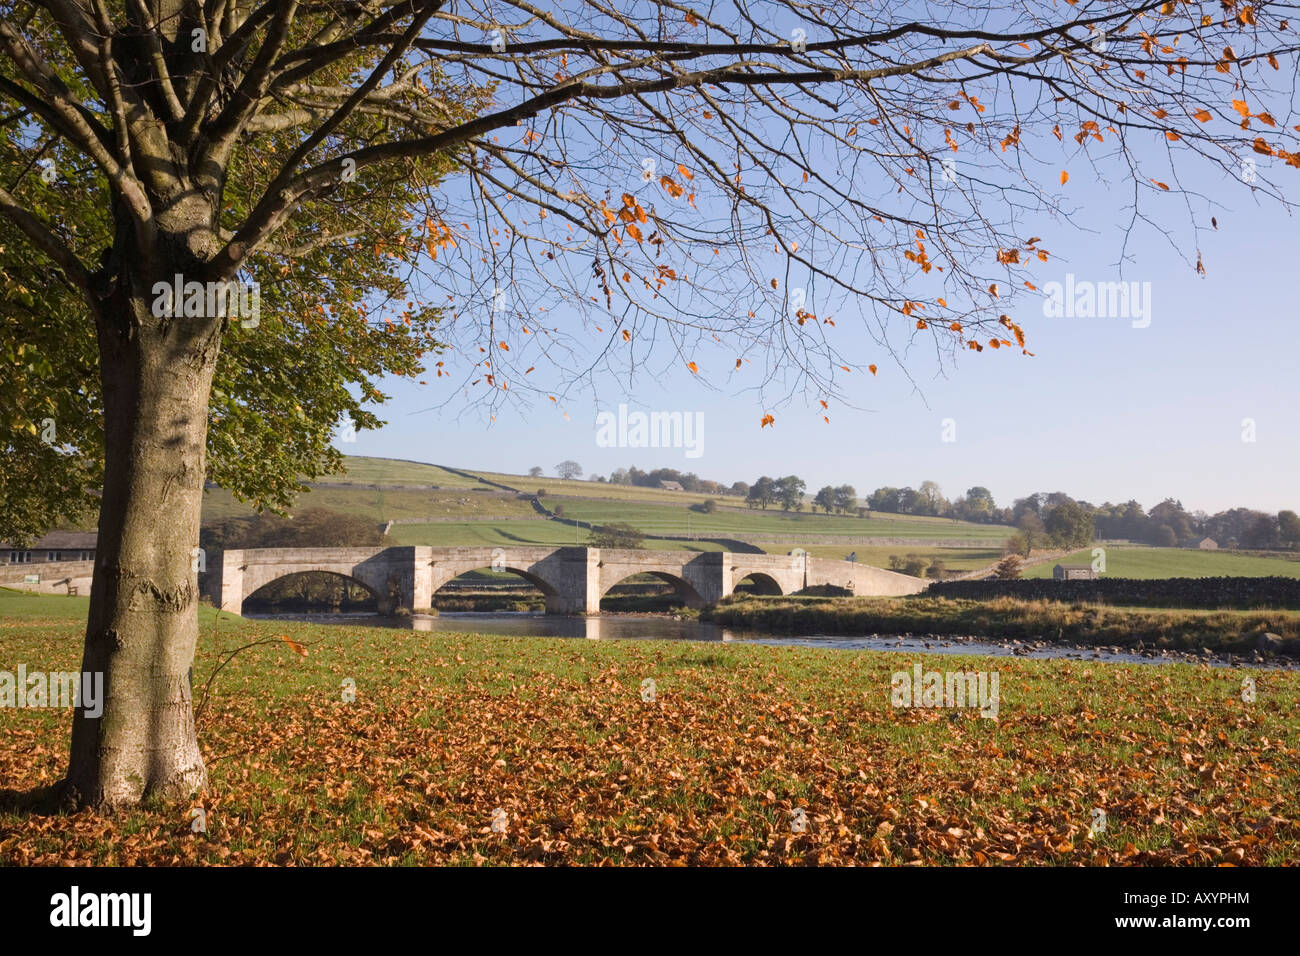 Fluß Wharfe und Stein gewölbten Brücke im Herbst. Burnsall Wharfedale Yorkshire Dales National Park England UK Großbritannien Stockfoto